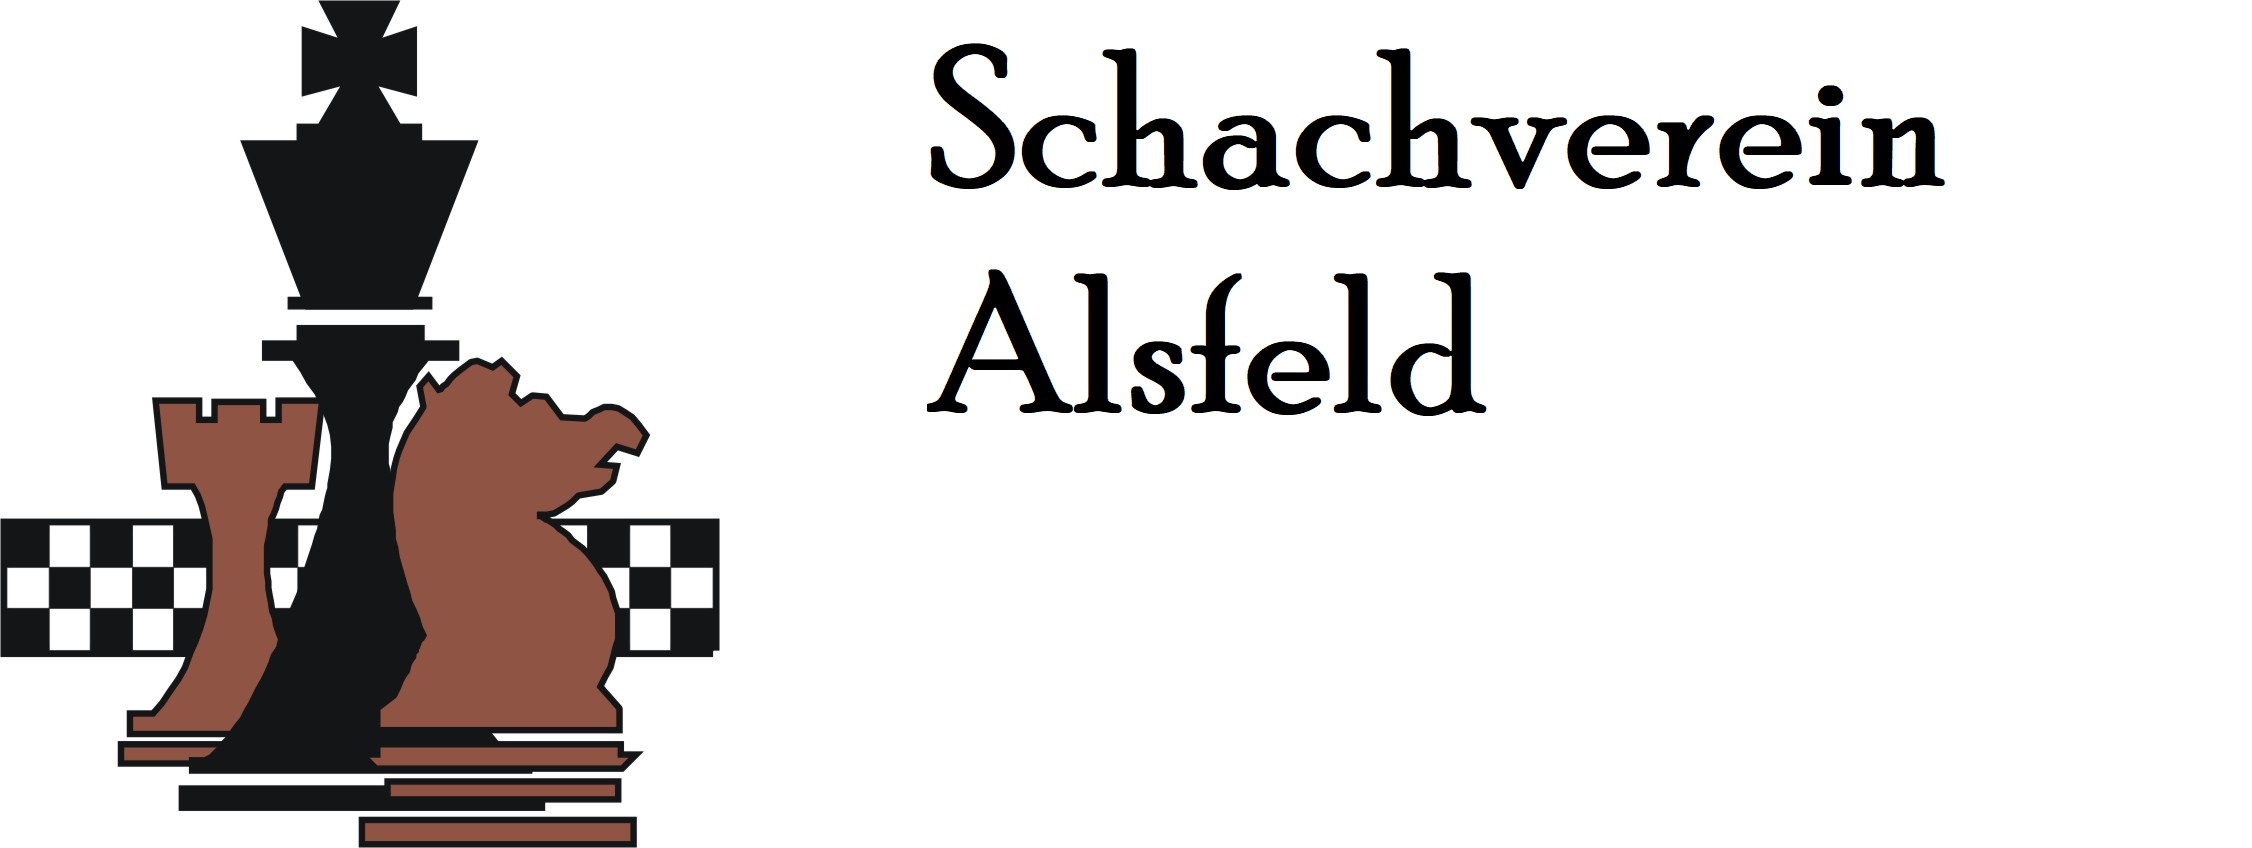 Schachverein Alsfeld